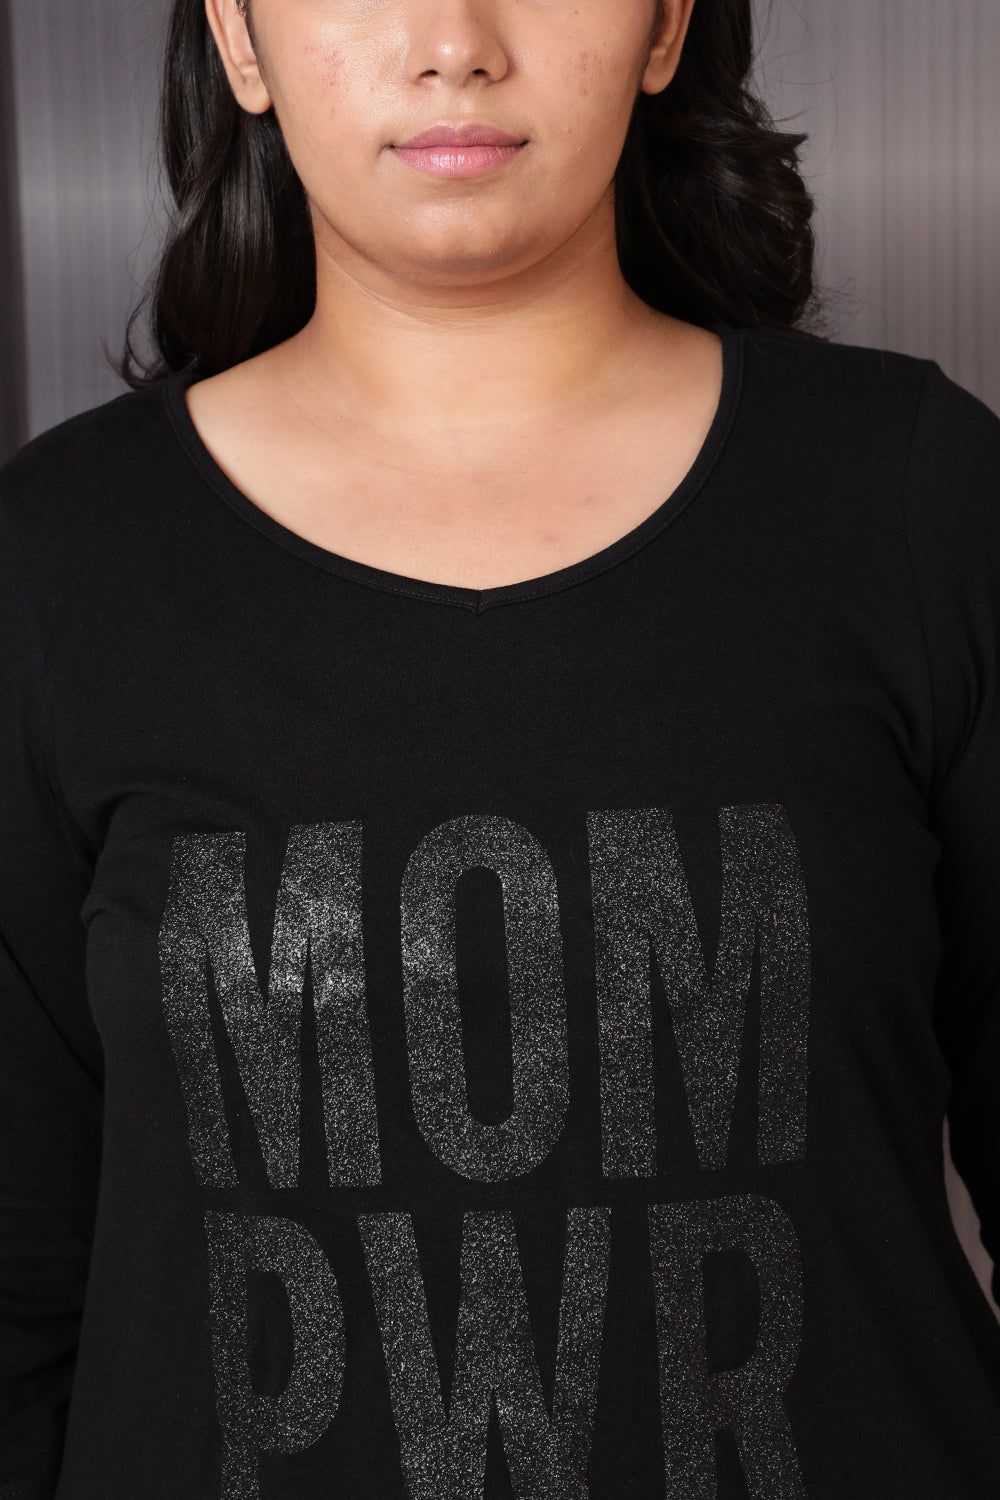 Plus Size Mom Power Black Tshirt